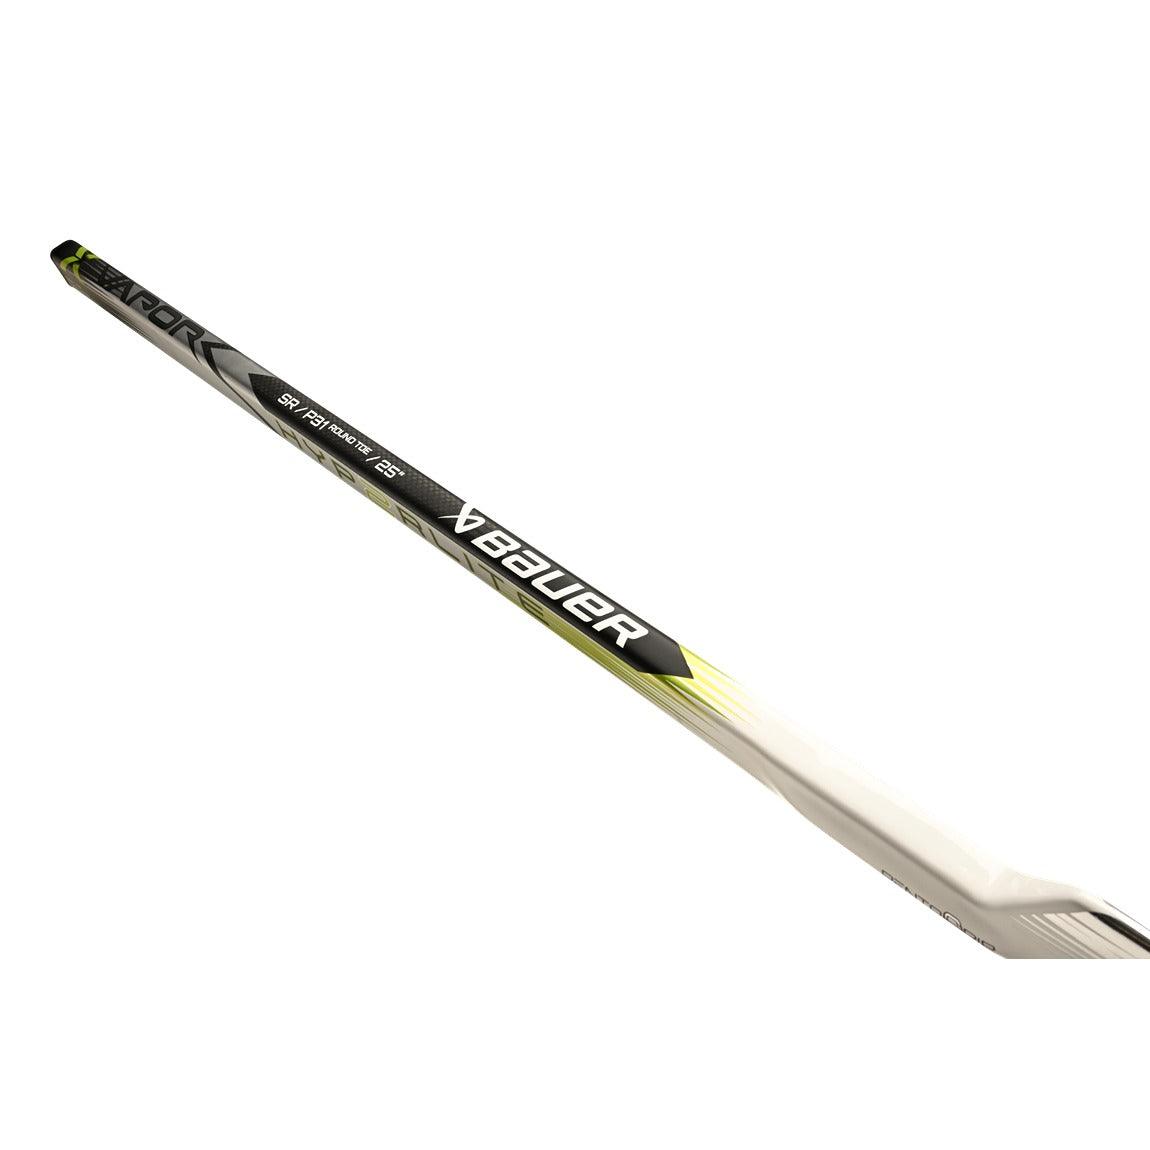 Vapor Hyperlite2 Goalie Stick - Senior - Sports Excellence